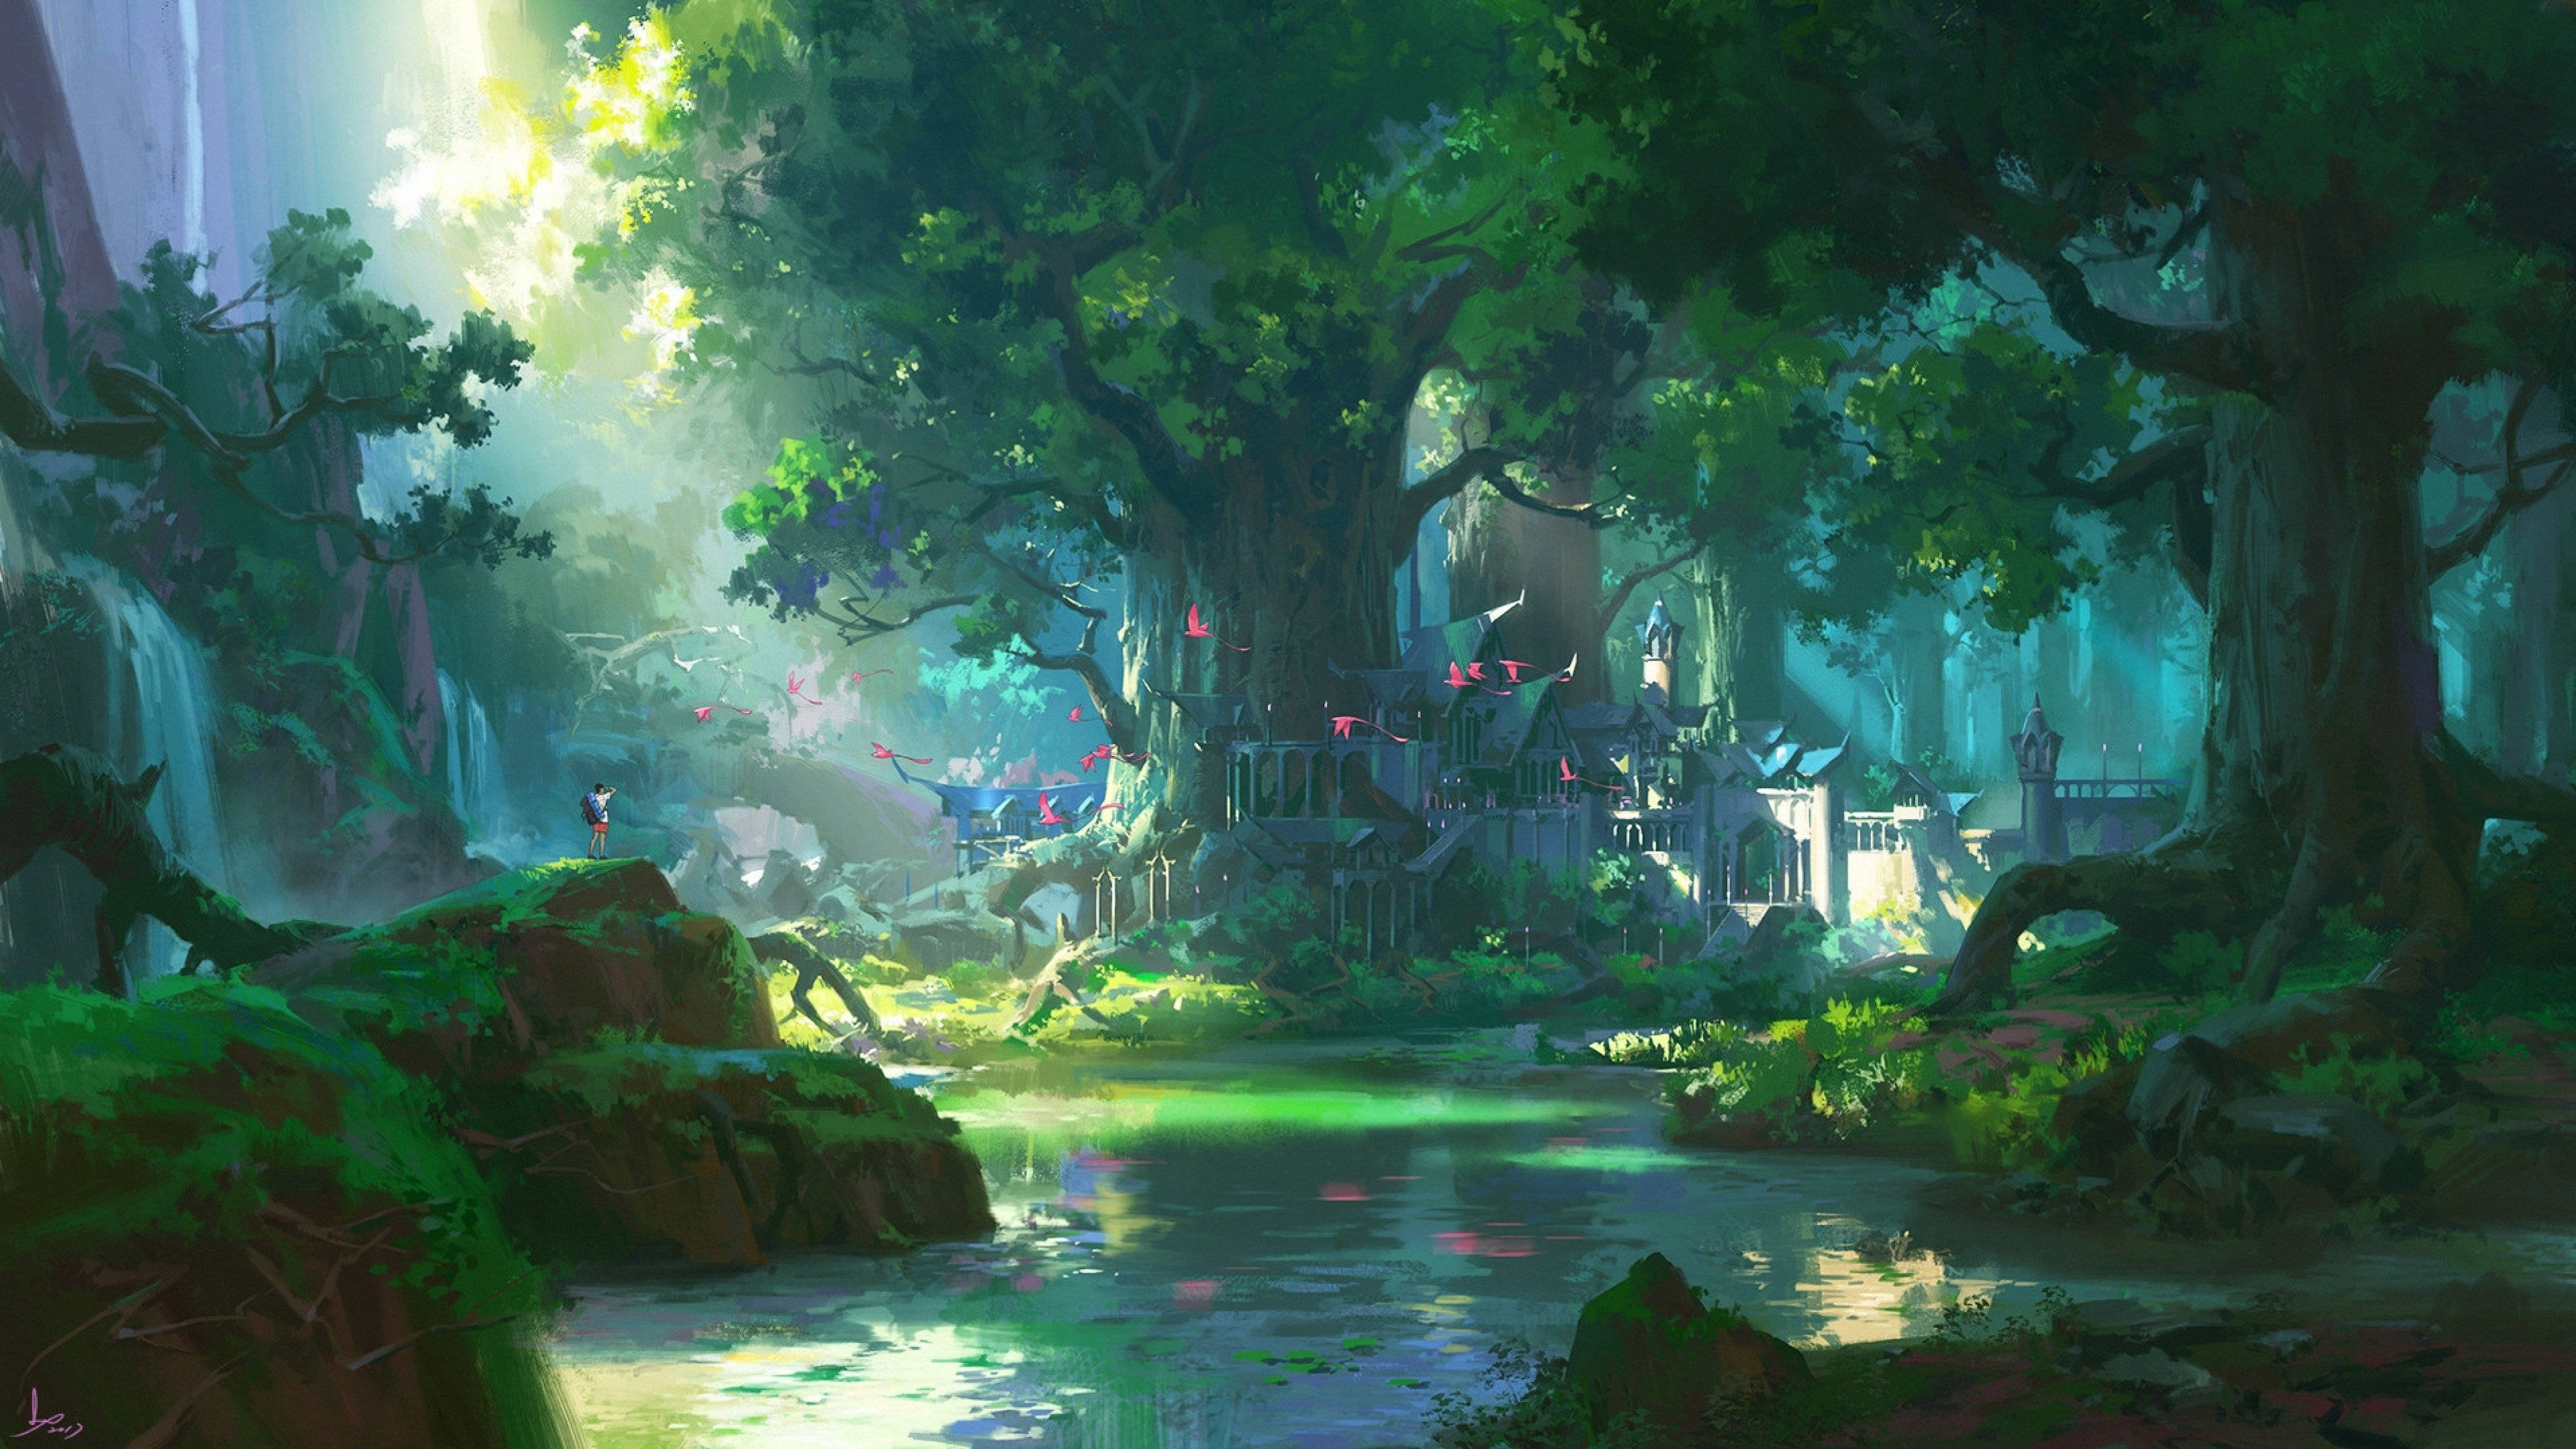 Rừng anime đẹp mắt là một trong những chủ đề được yêu thích nhất trong giới anime. Hình ảnh này sẽ đưa bạn đến những cánh rừng bí ẩn và đầy màu sắc với những giọt sương rơi rơi cùng với ánh nắng mát mẻ. Hãy để những hình ảnh liên quan đến rừng anime đẹp mắt này thay đổi những ngày của bạn.